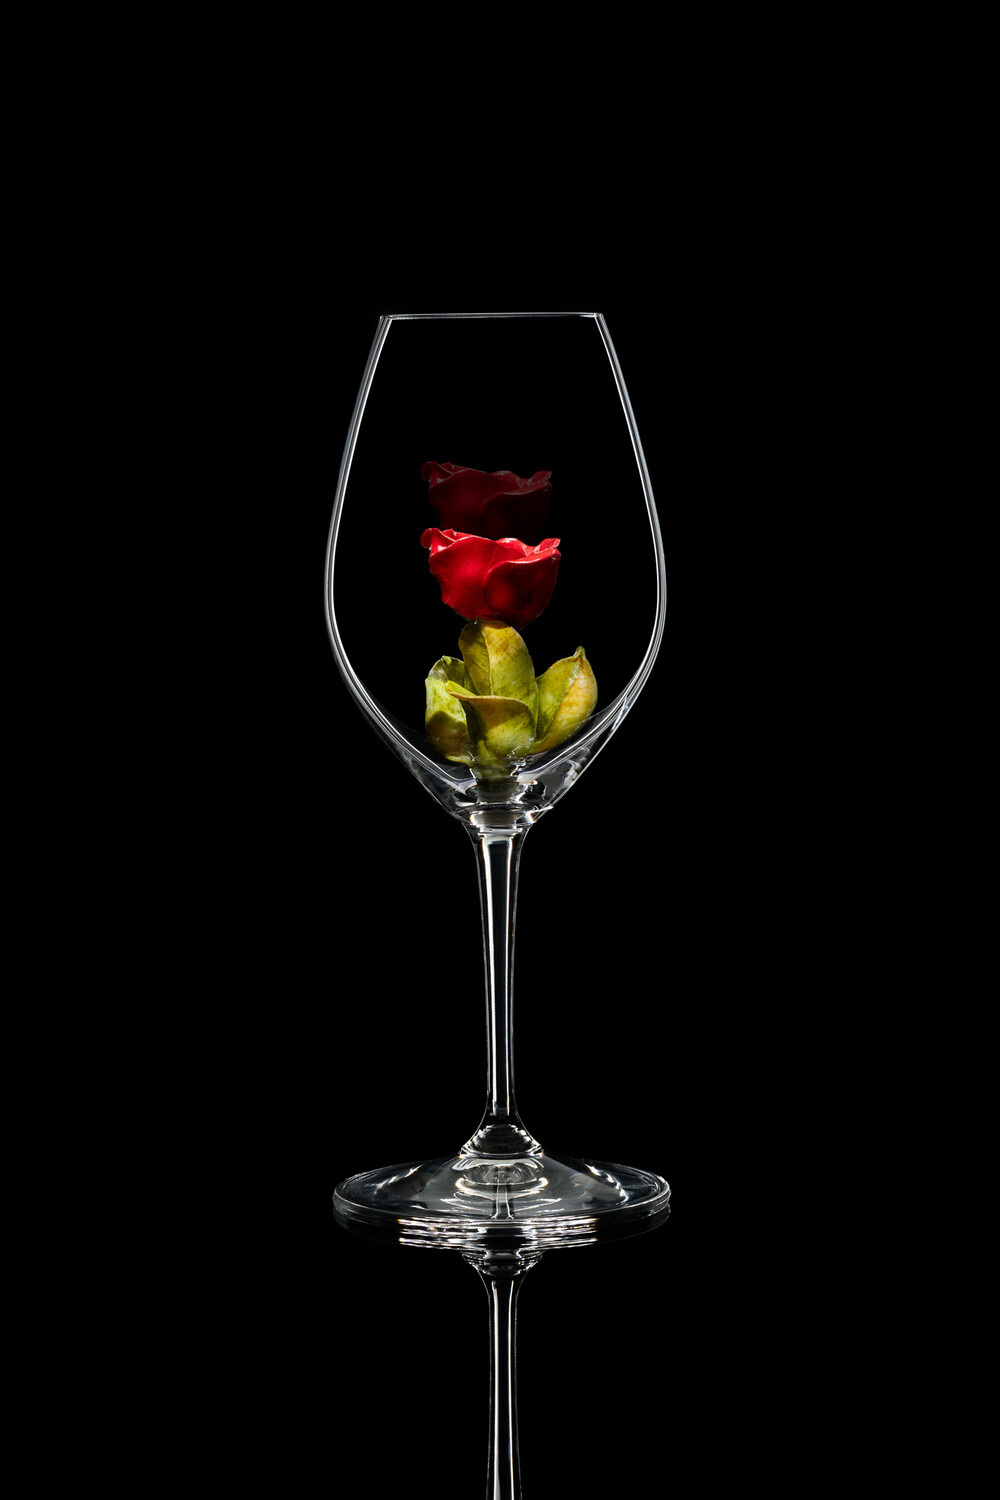 Бокал для шампанского Роза бутон красная, стекло Ридель.